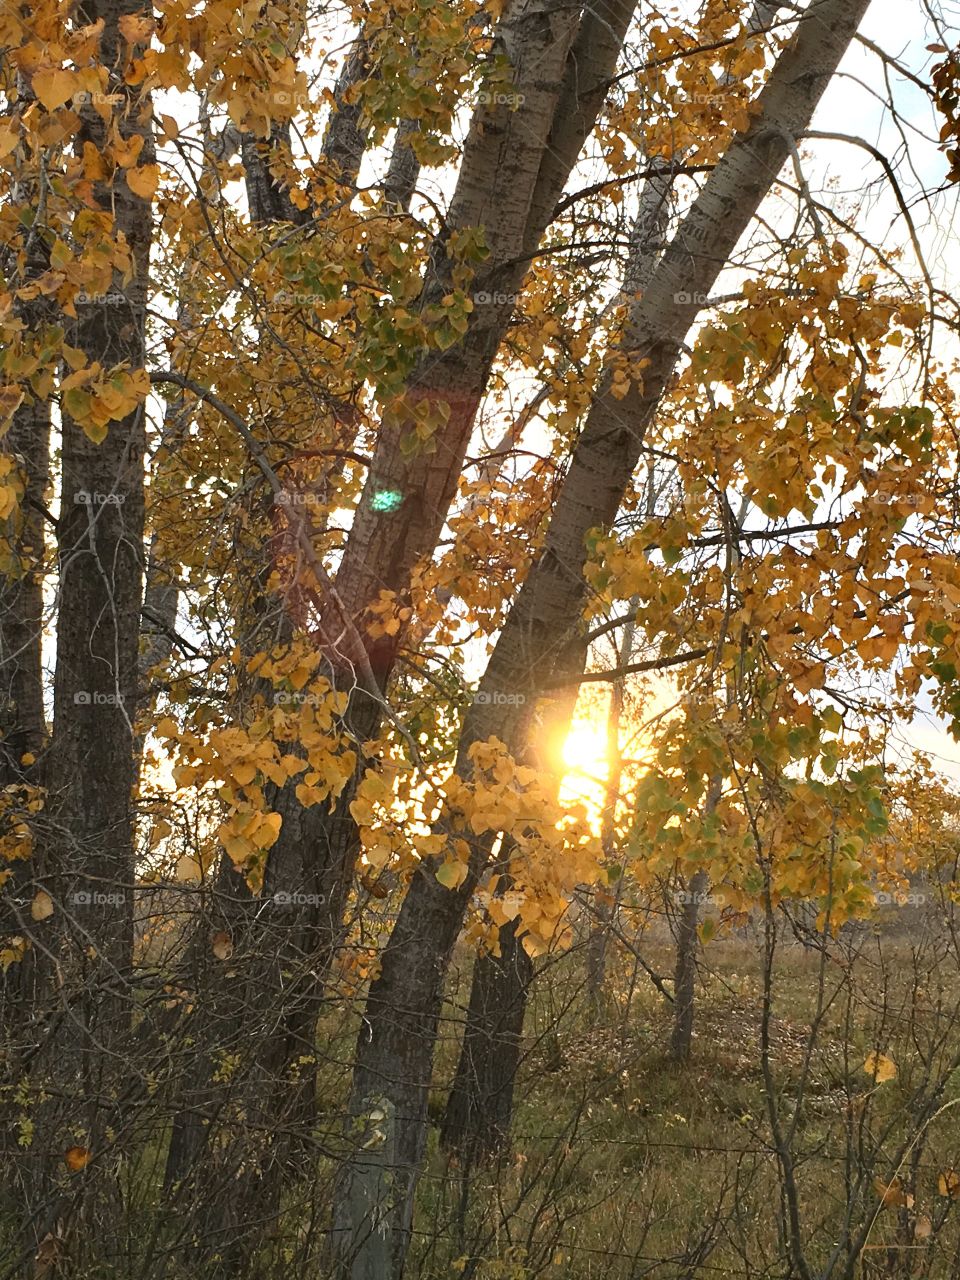 Last light of fall